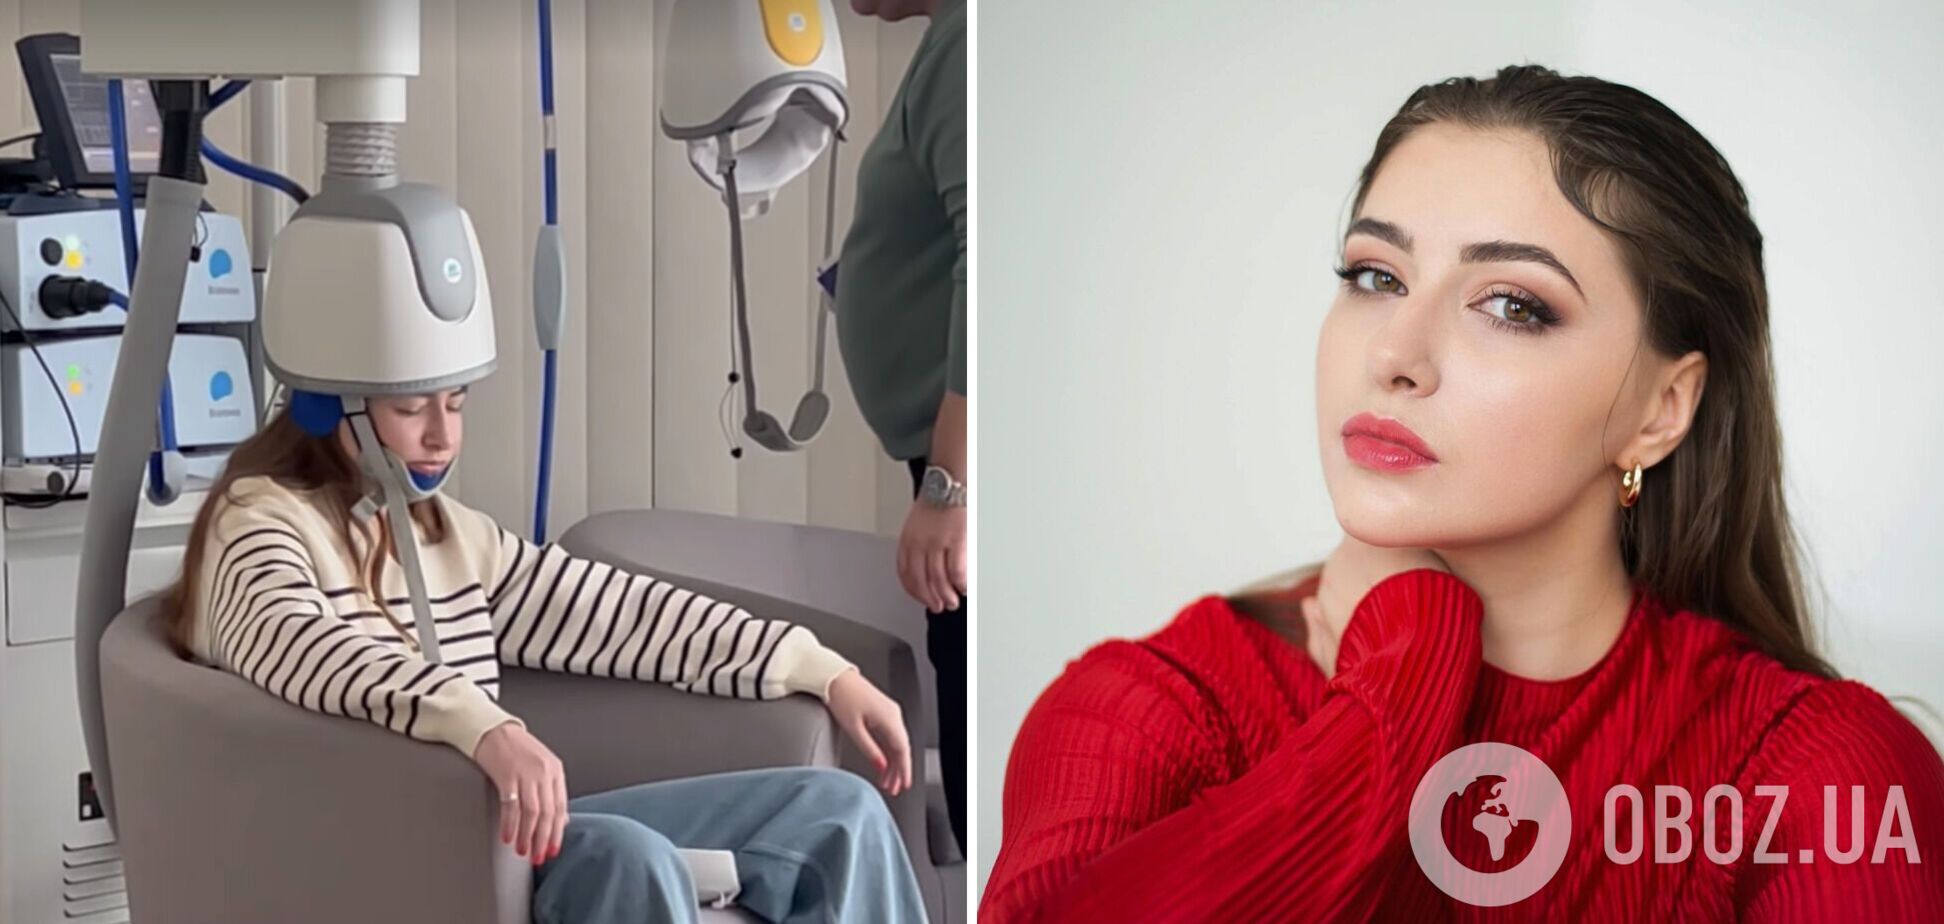 Екатерина Тышкевич, которая несколько лет борется с тяжелой болезнью, показала видео лечения: у актрисы постоянно текли слезы